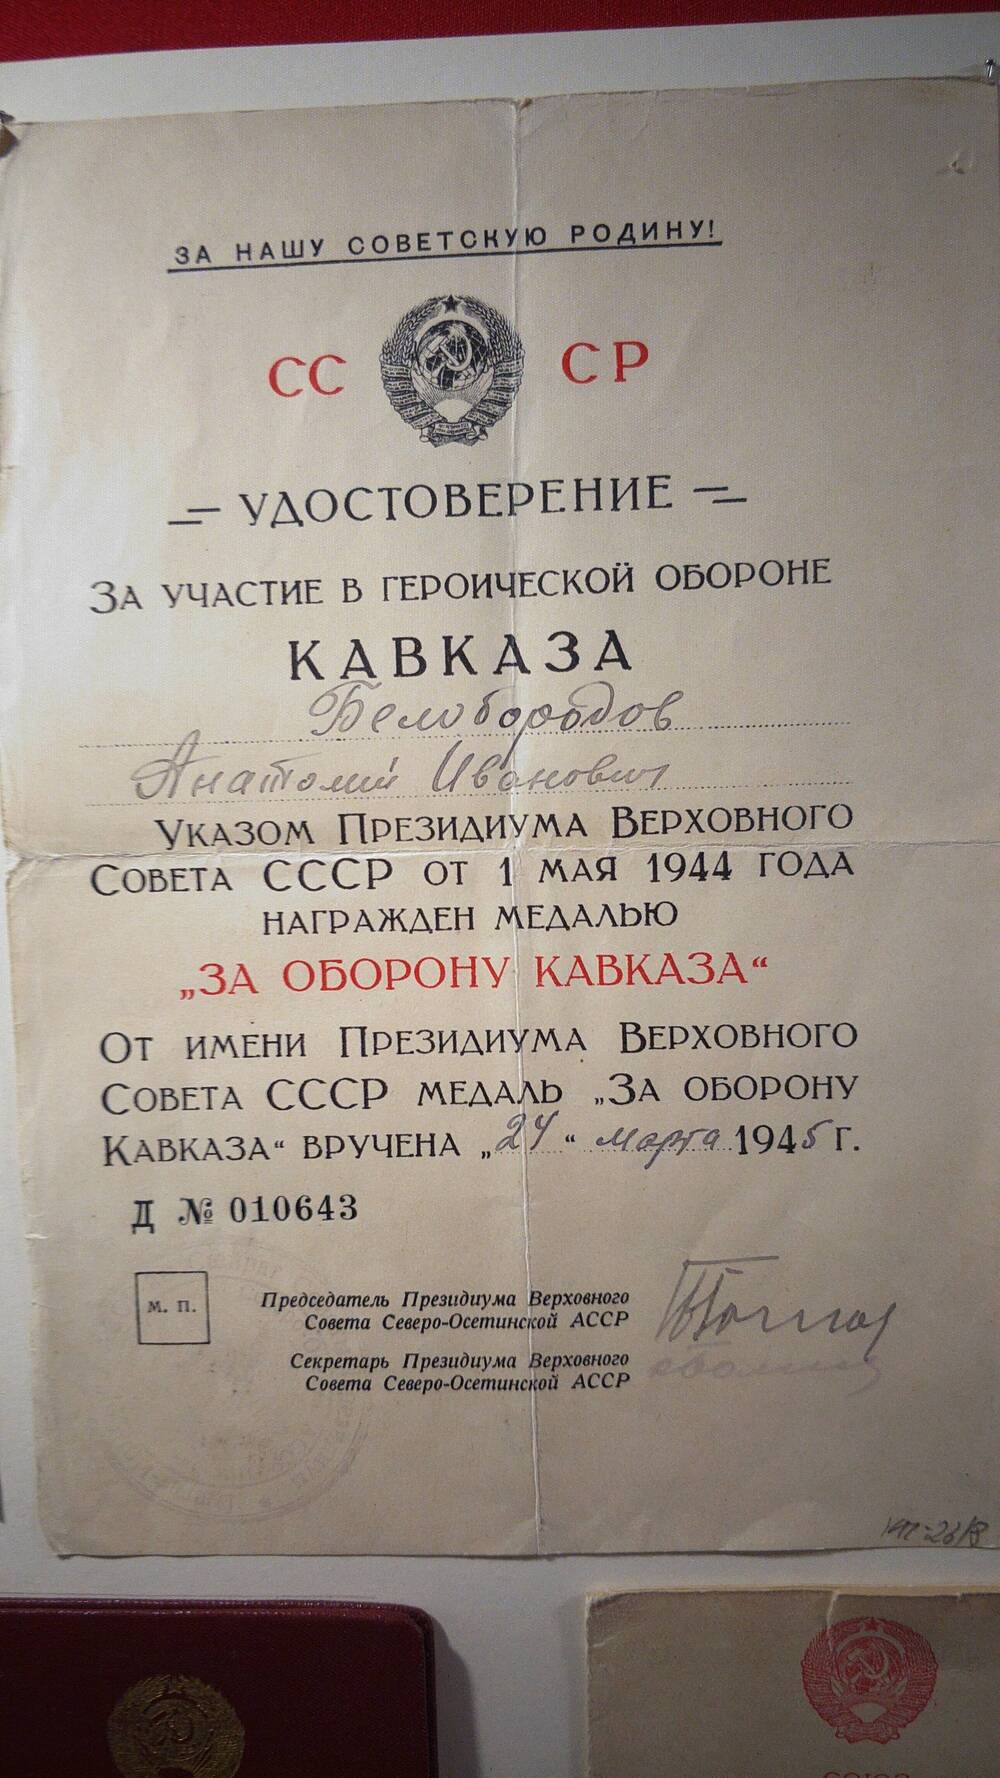 Удостоверение к медали За оборону Кавказа серия Д № 010643 вручено 24 марта 1945 г.